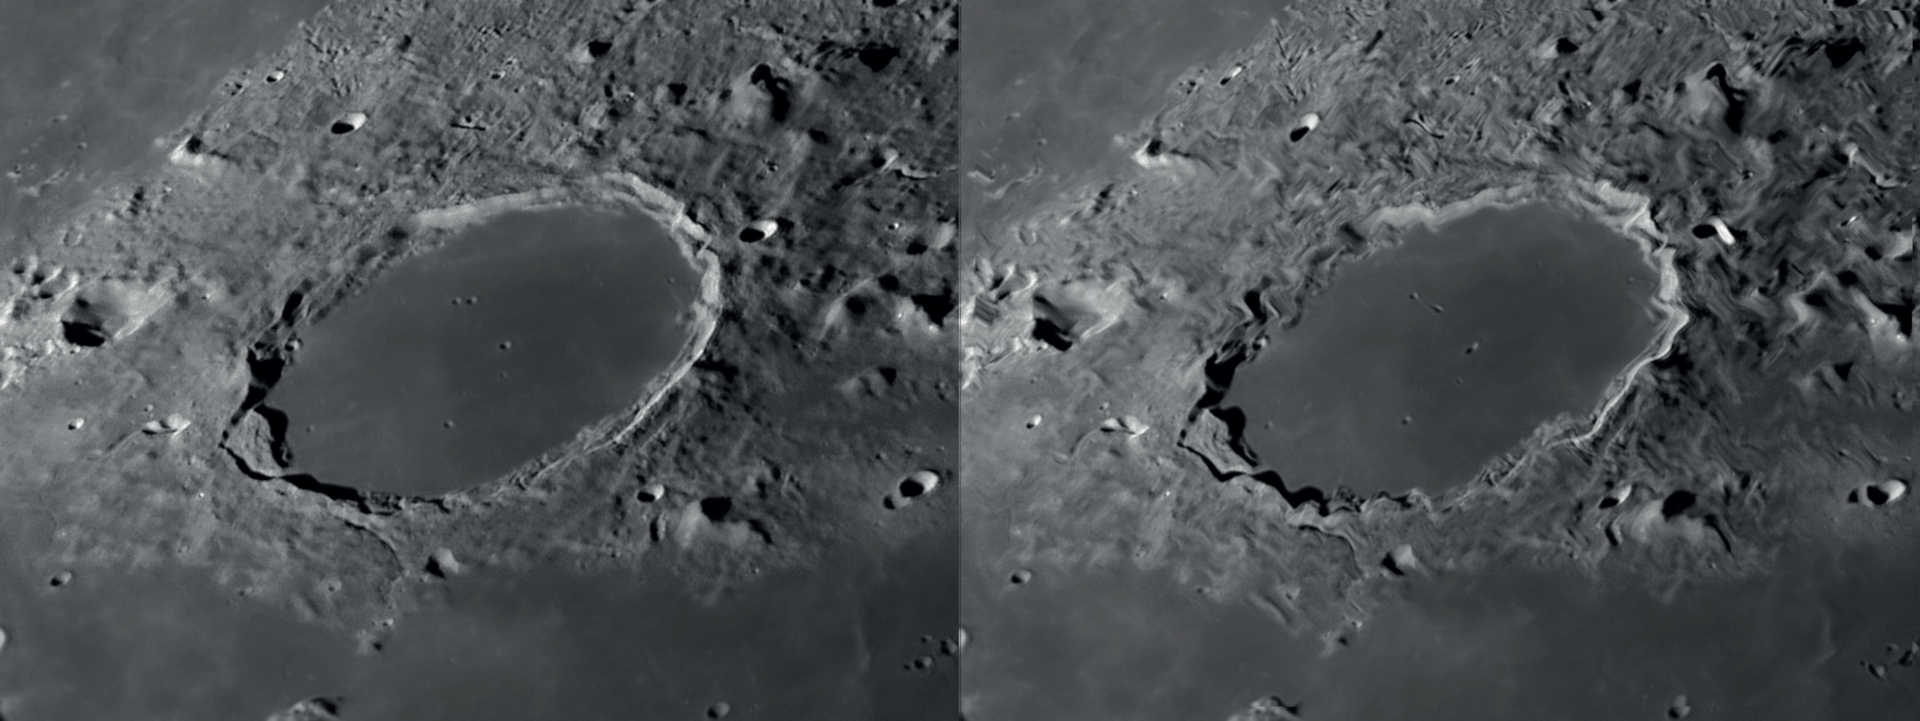 Przy dobrym seeingu rozpoznawalność szczegółów podczas obserwacji Księżyca i planet jest wysoka (po lewej). Powolne ruchy powietrza prowadzą do miejscowych zniekształceń obrazu, podczas gdy pozostała część obrazu pozostaje ostra (po prawej). NASA/GSFC/Arizona State University/L. Spix